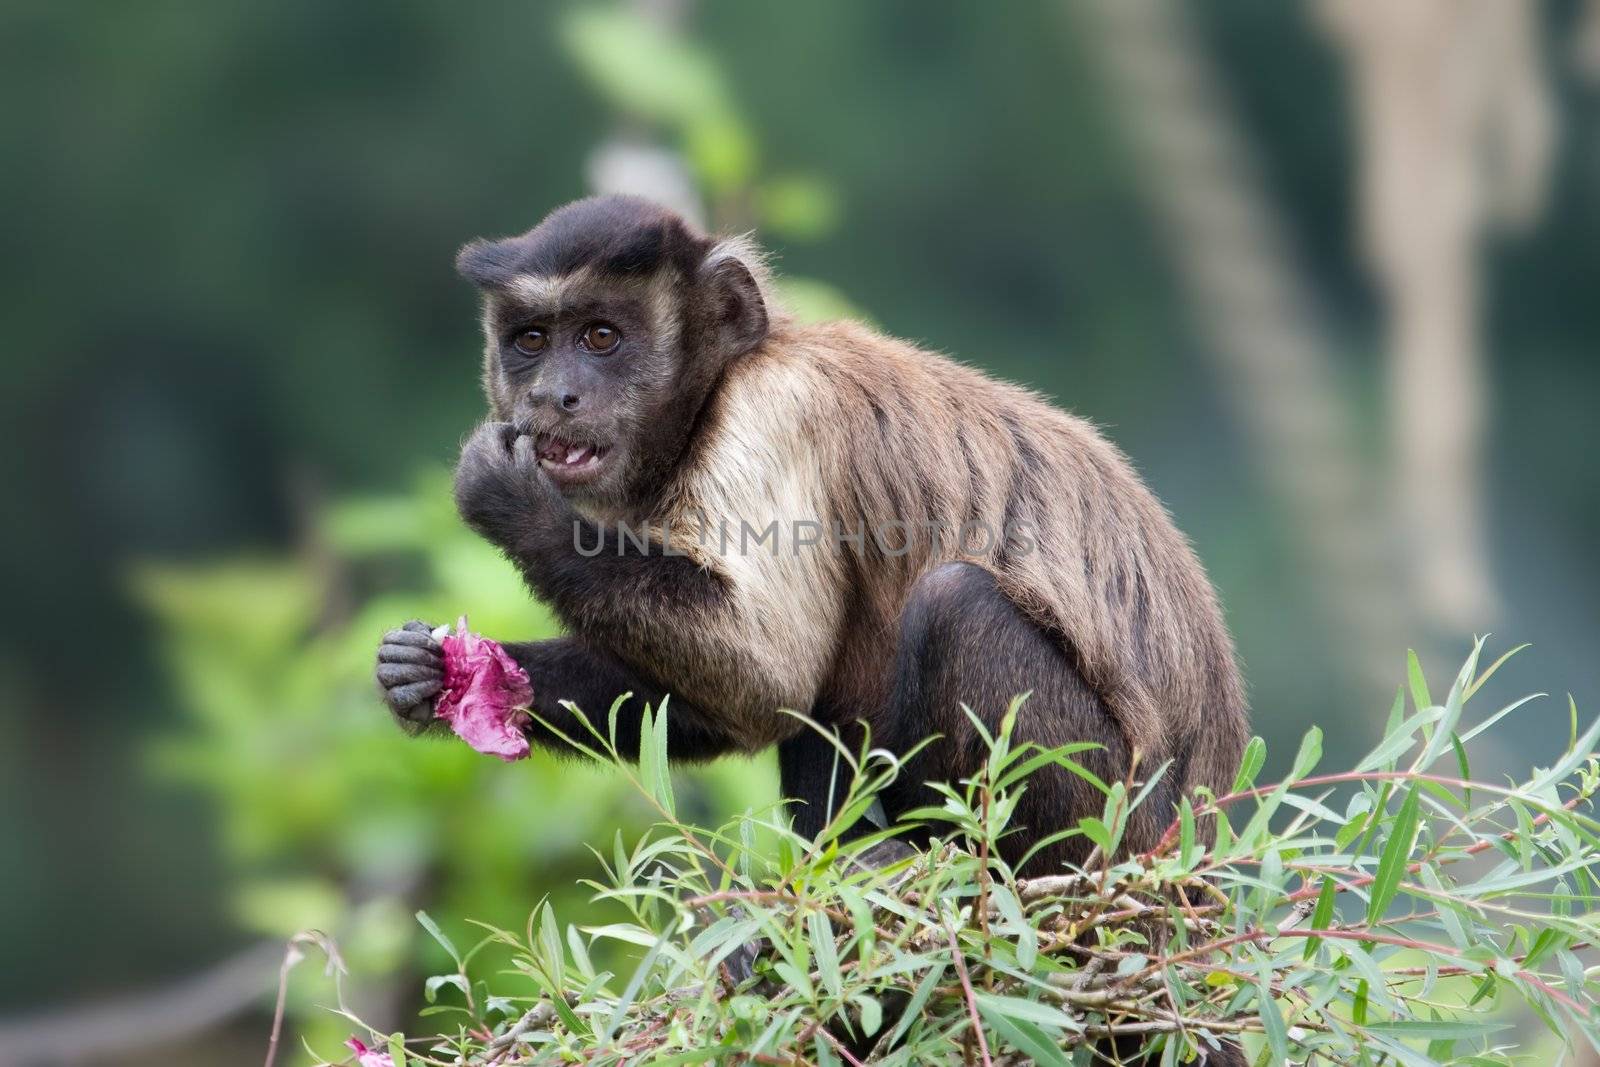 Tufted Capuchin (Cebus apella) eating on tree.